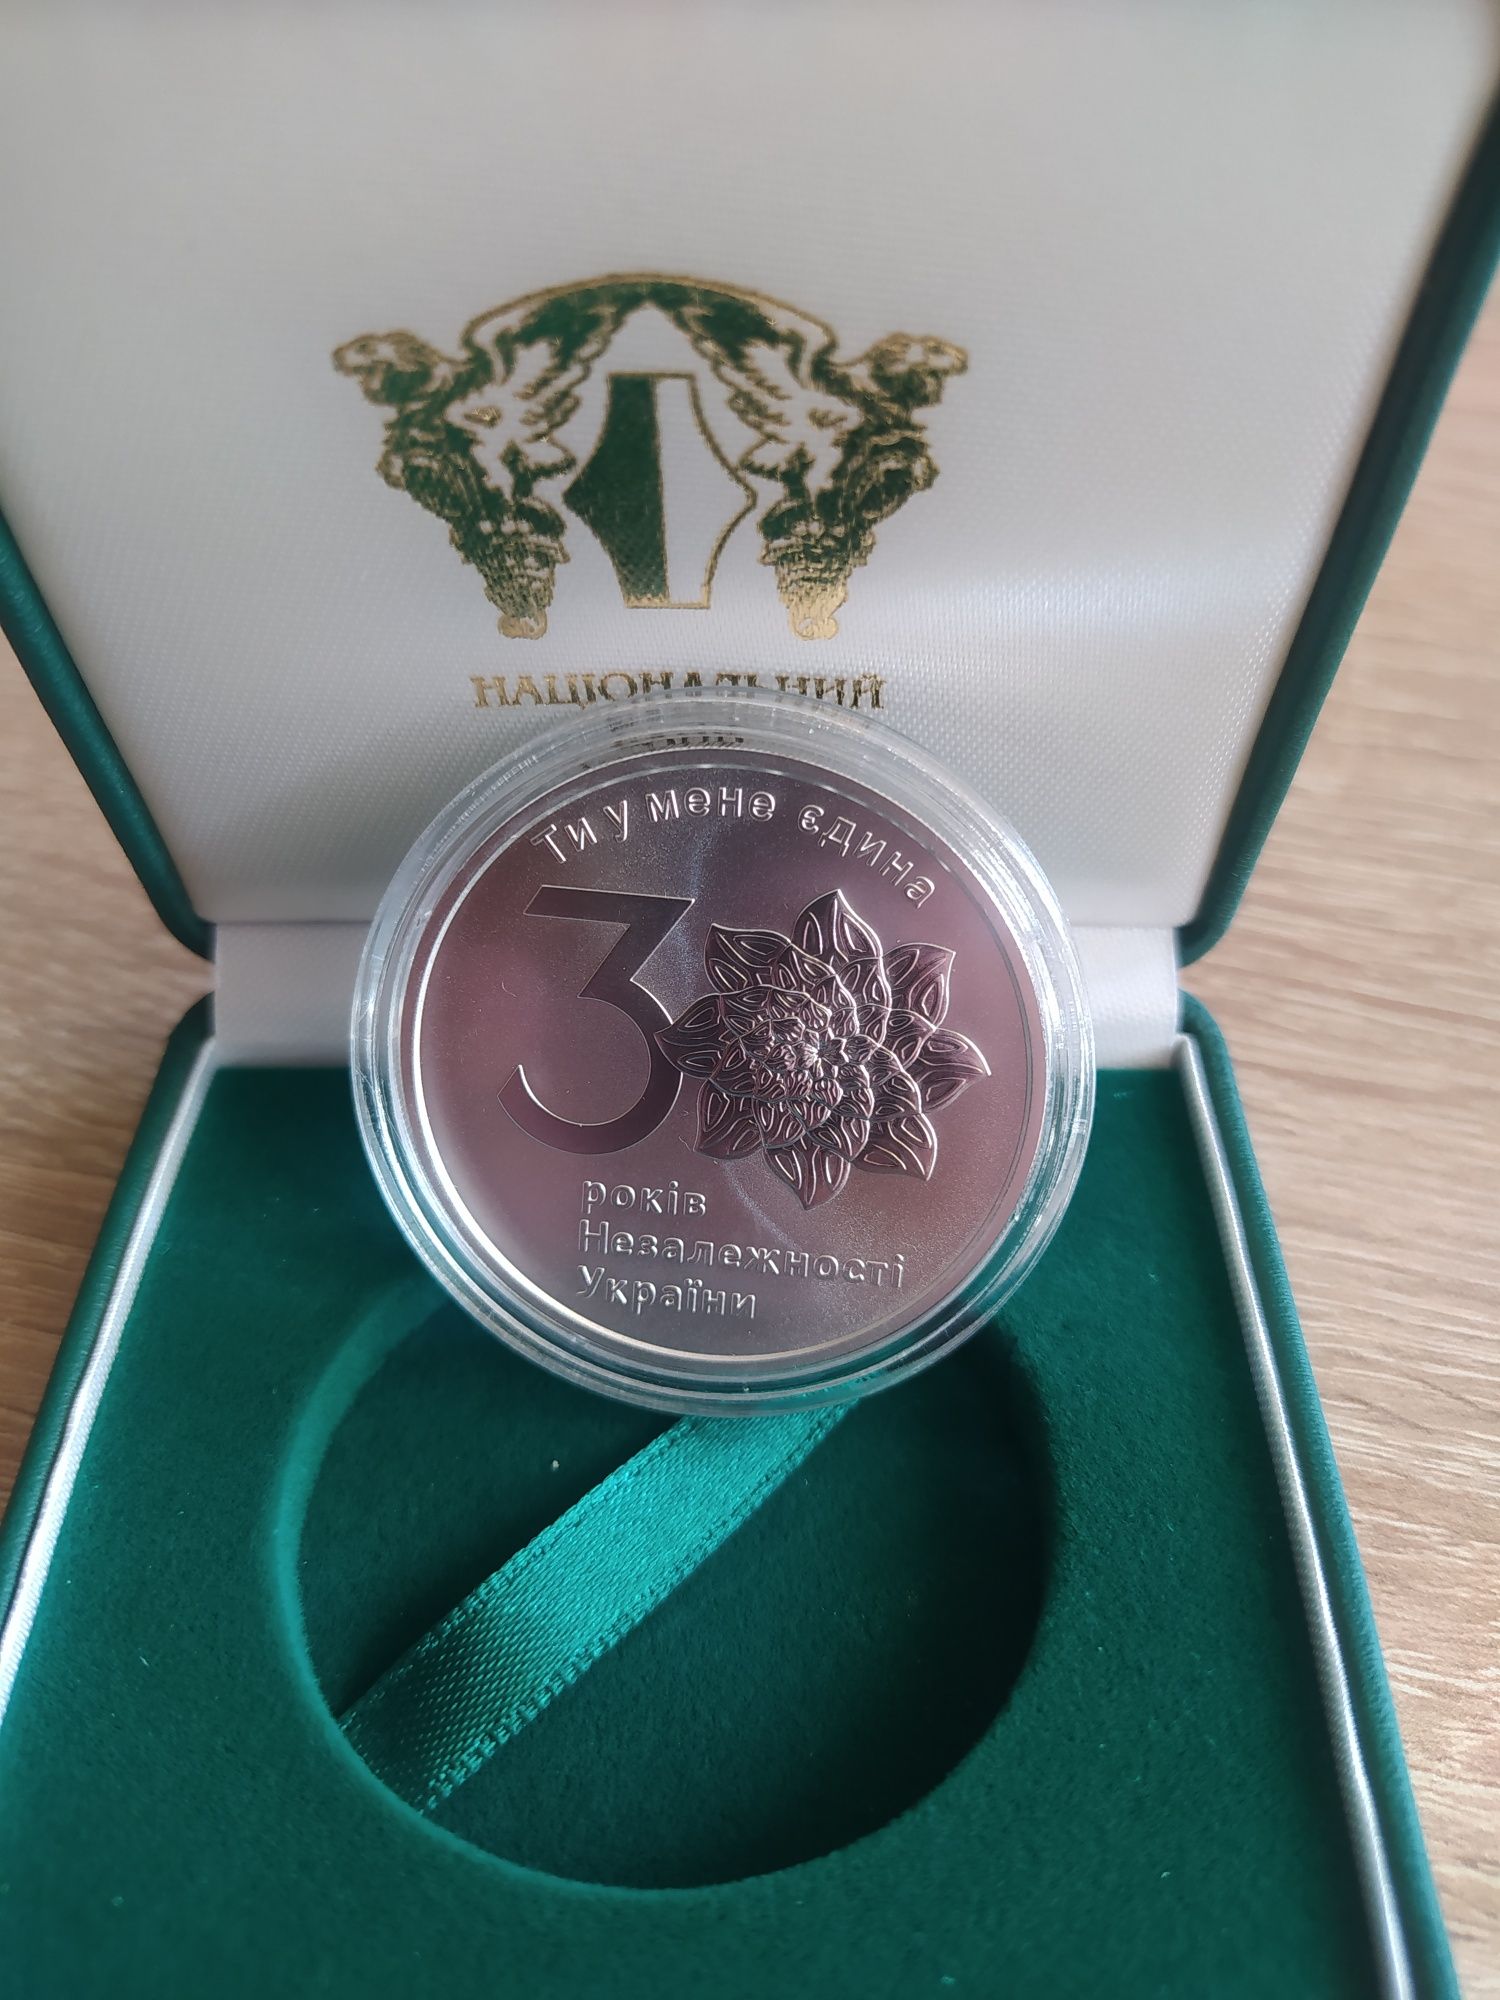 30 років незалежності, монета срібна НБУ + медаль